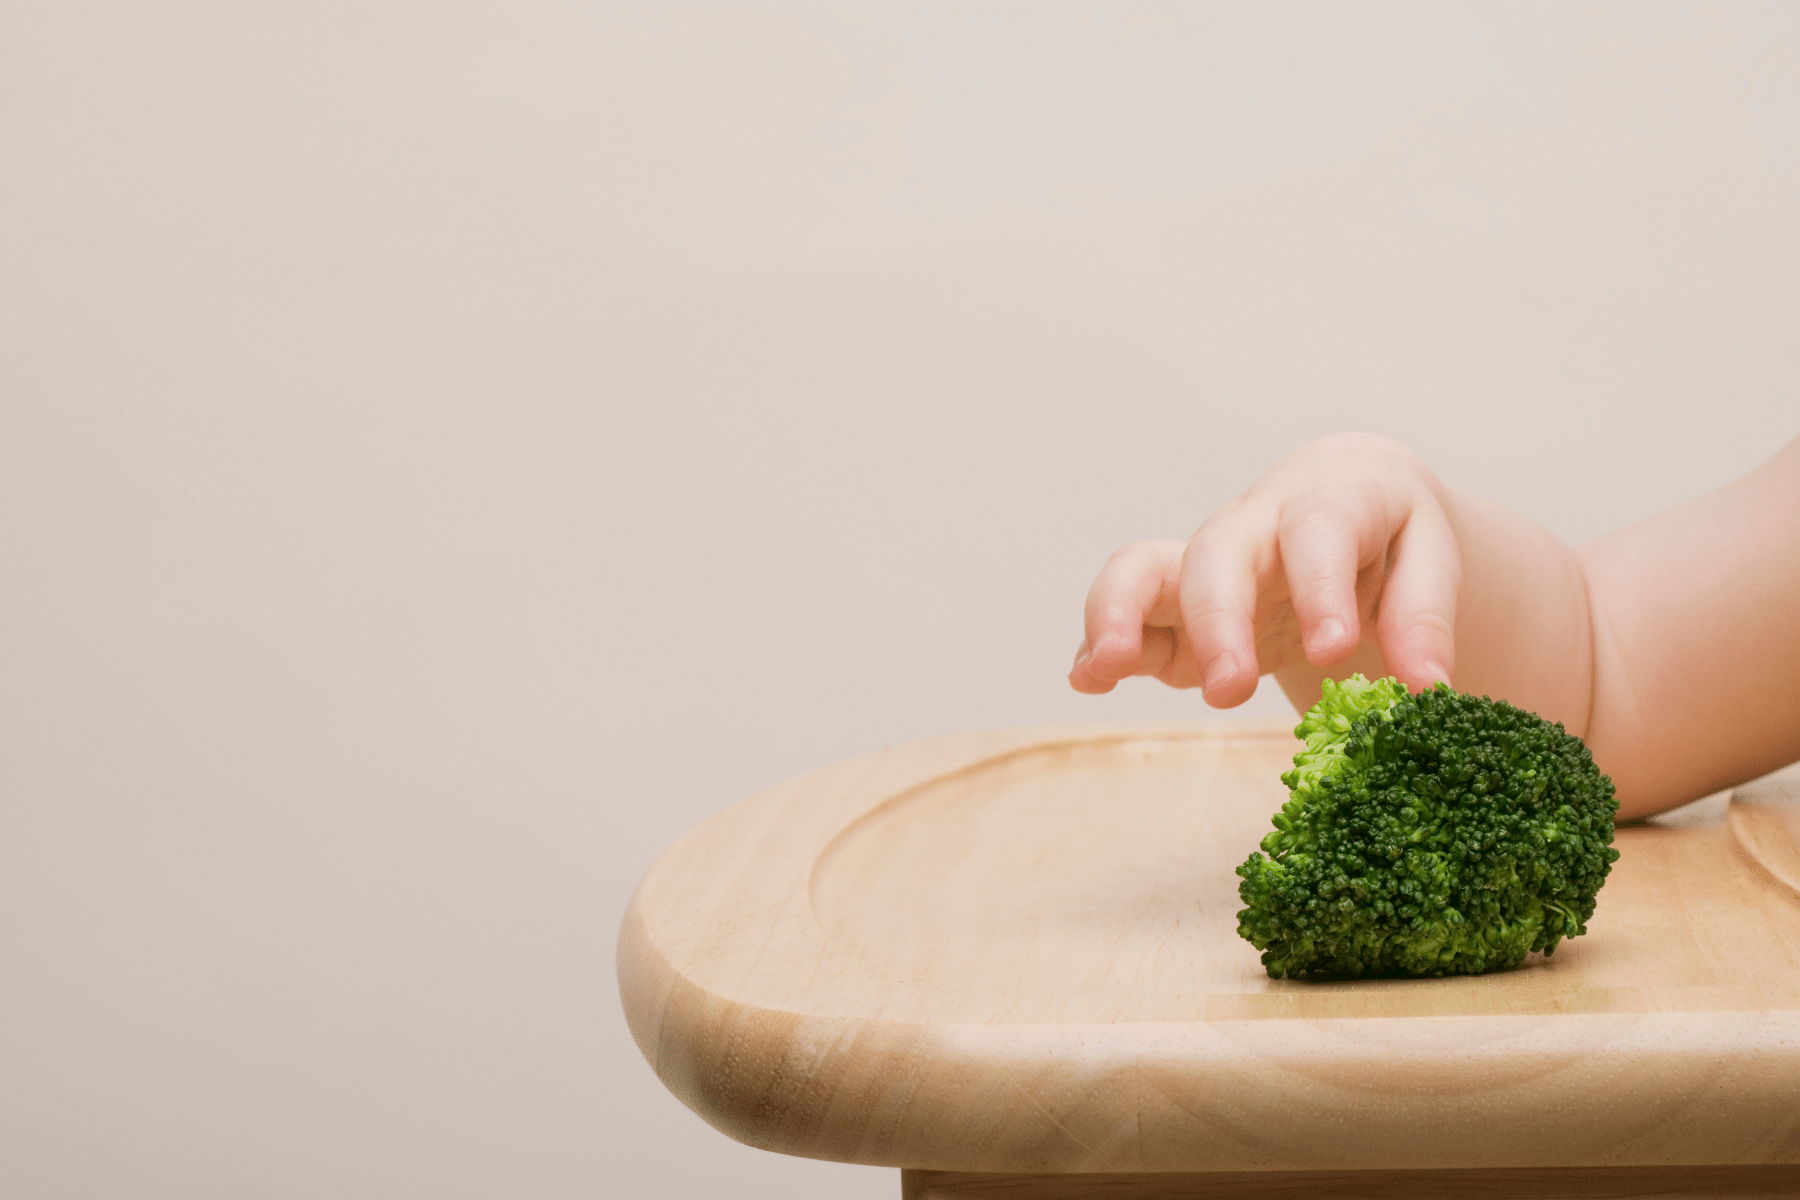 brokolinin bebekler i̇çin fayda ve riskleri nelerdir